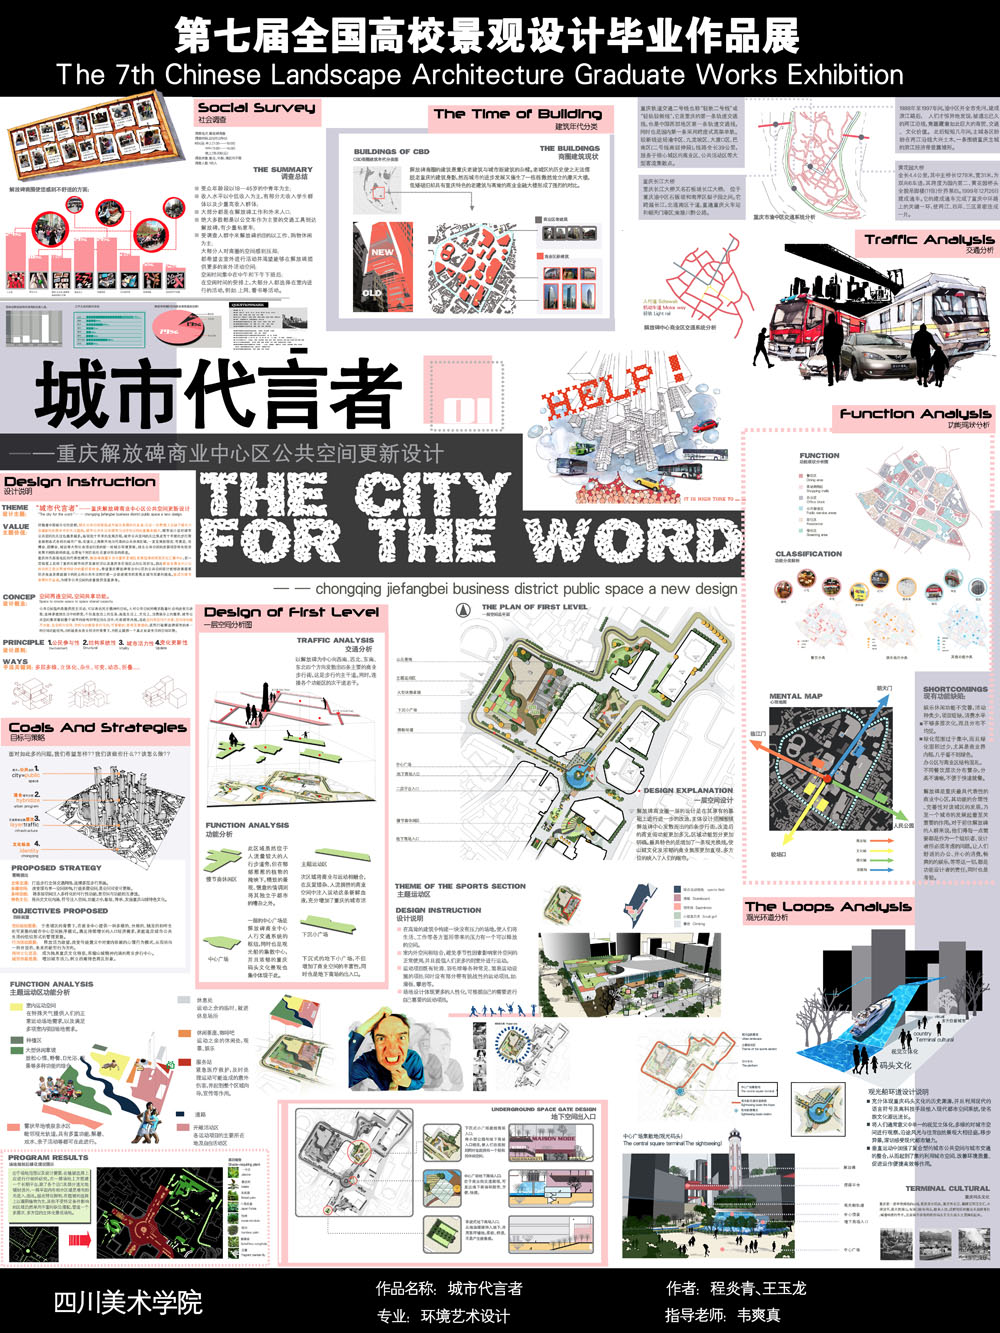 城市代言者—— 重庆解放碑商业中心区公共空间更新设计-1